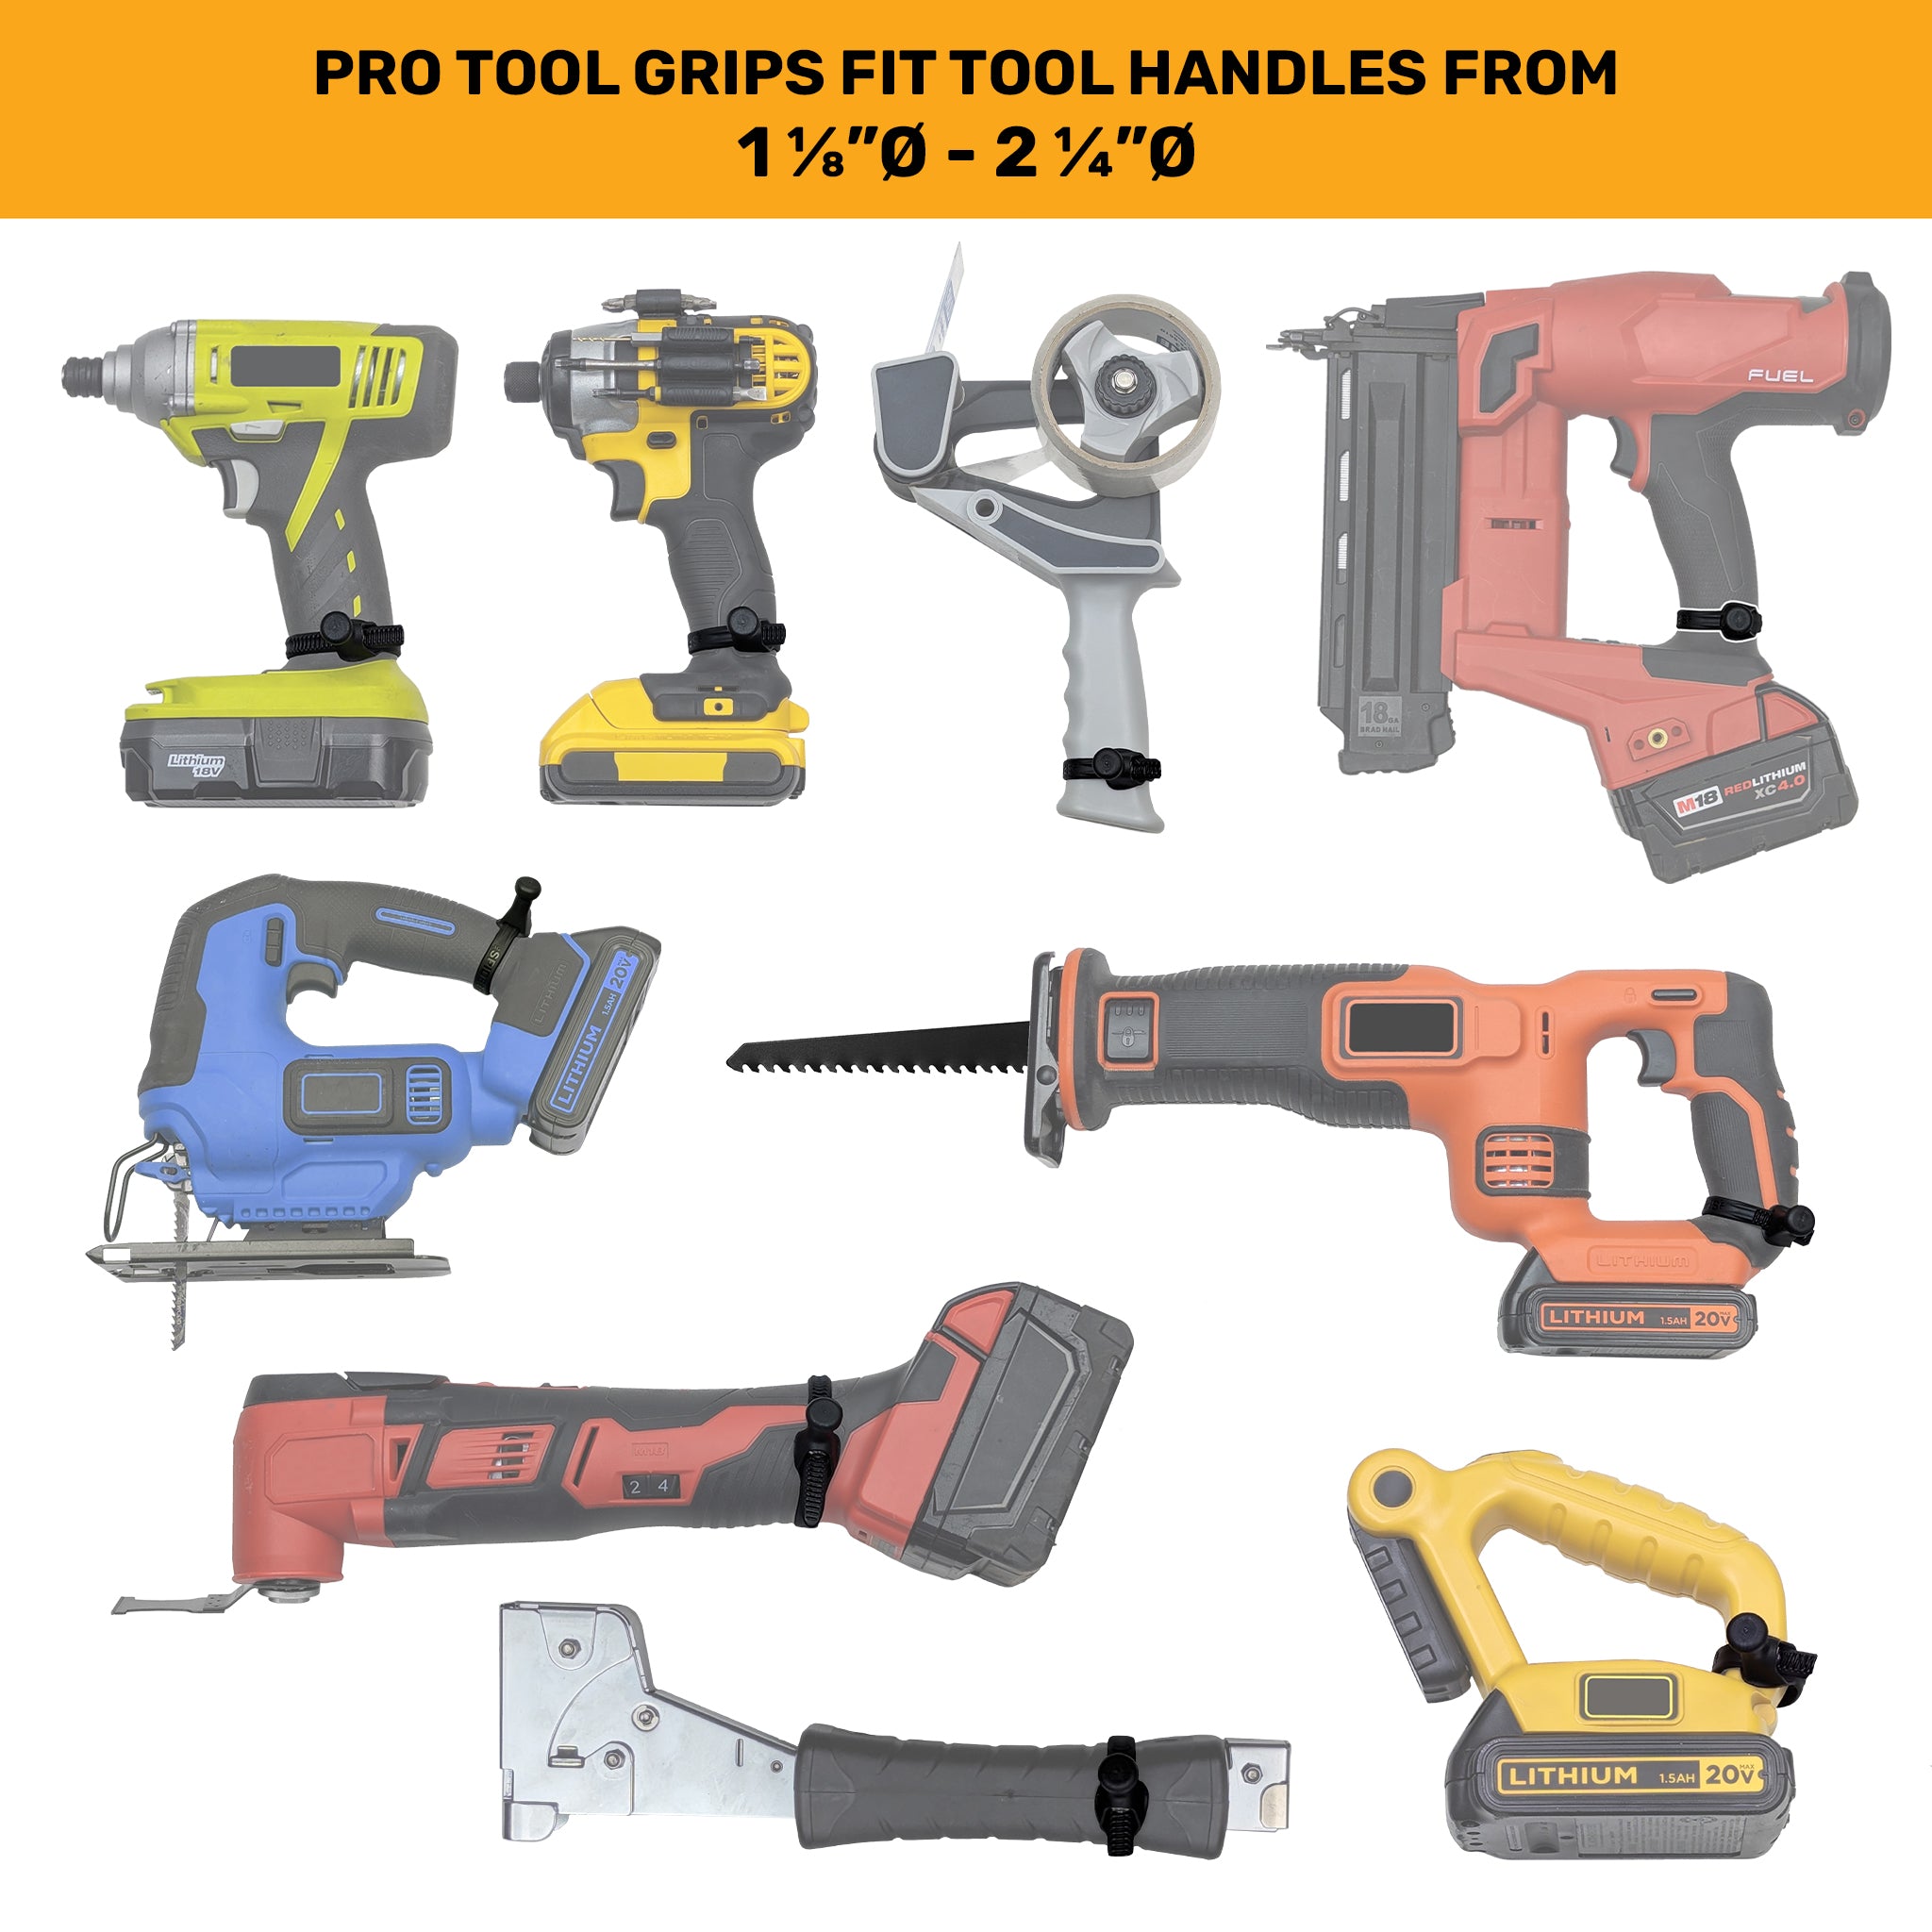 5610TH: Pro Tool Grip